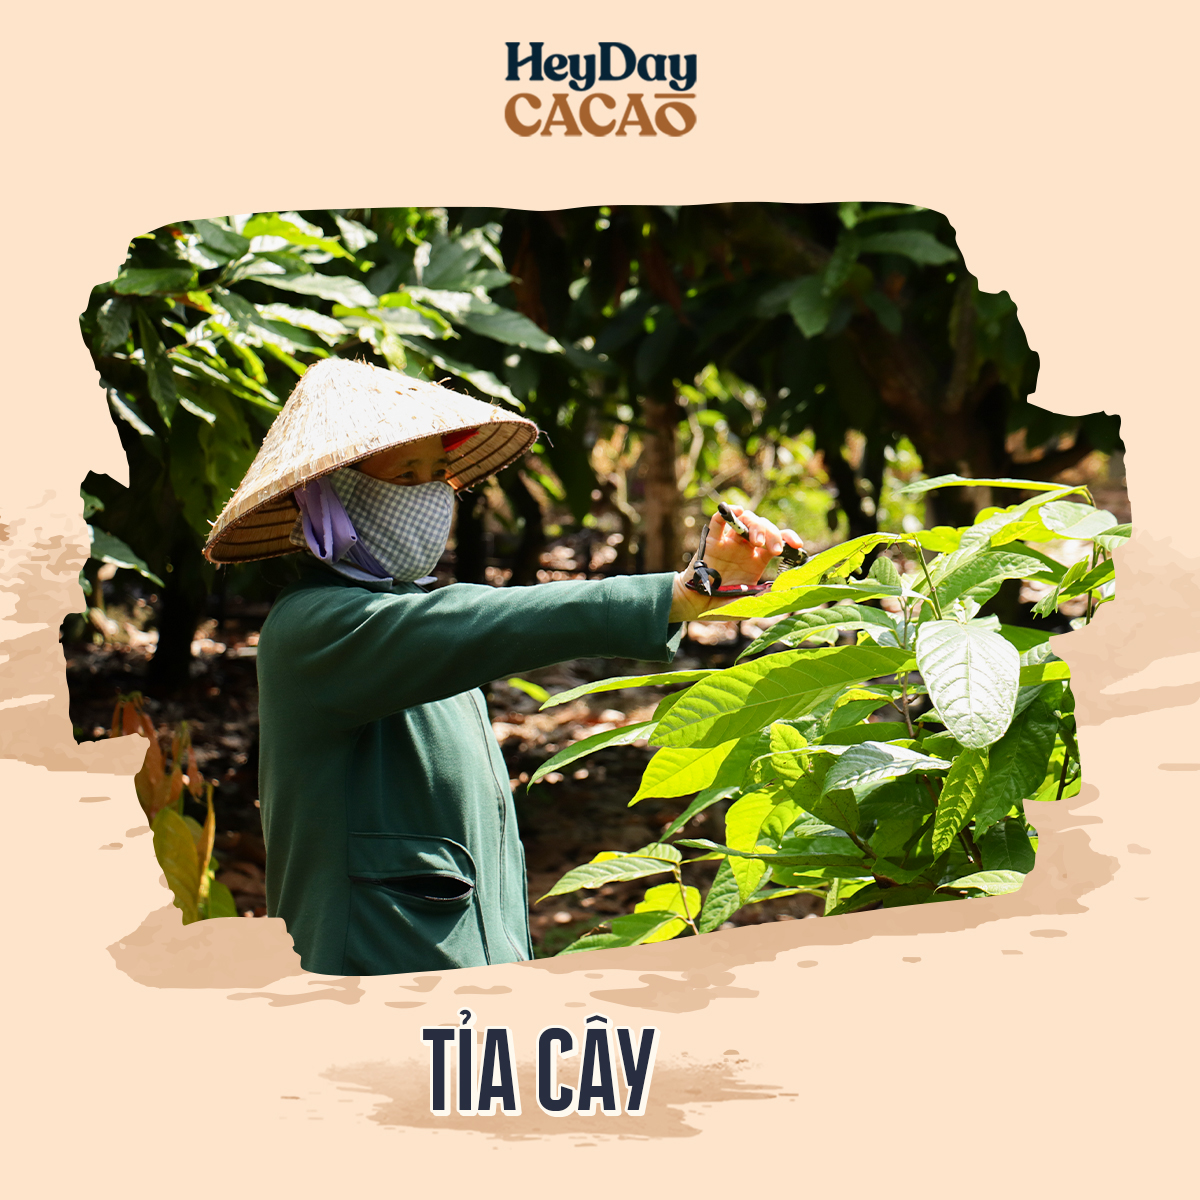 Hình ảnh Bột cacao nguyên chất 100% Việt Nam - Dòng Balanced phổ thông túi 200g -  Chuyên dùng làm bánh, pha chế cho quán cà phê - Heyday Cacao